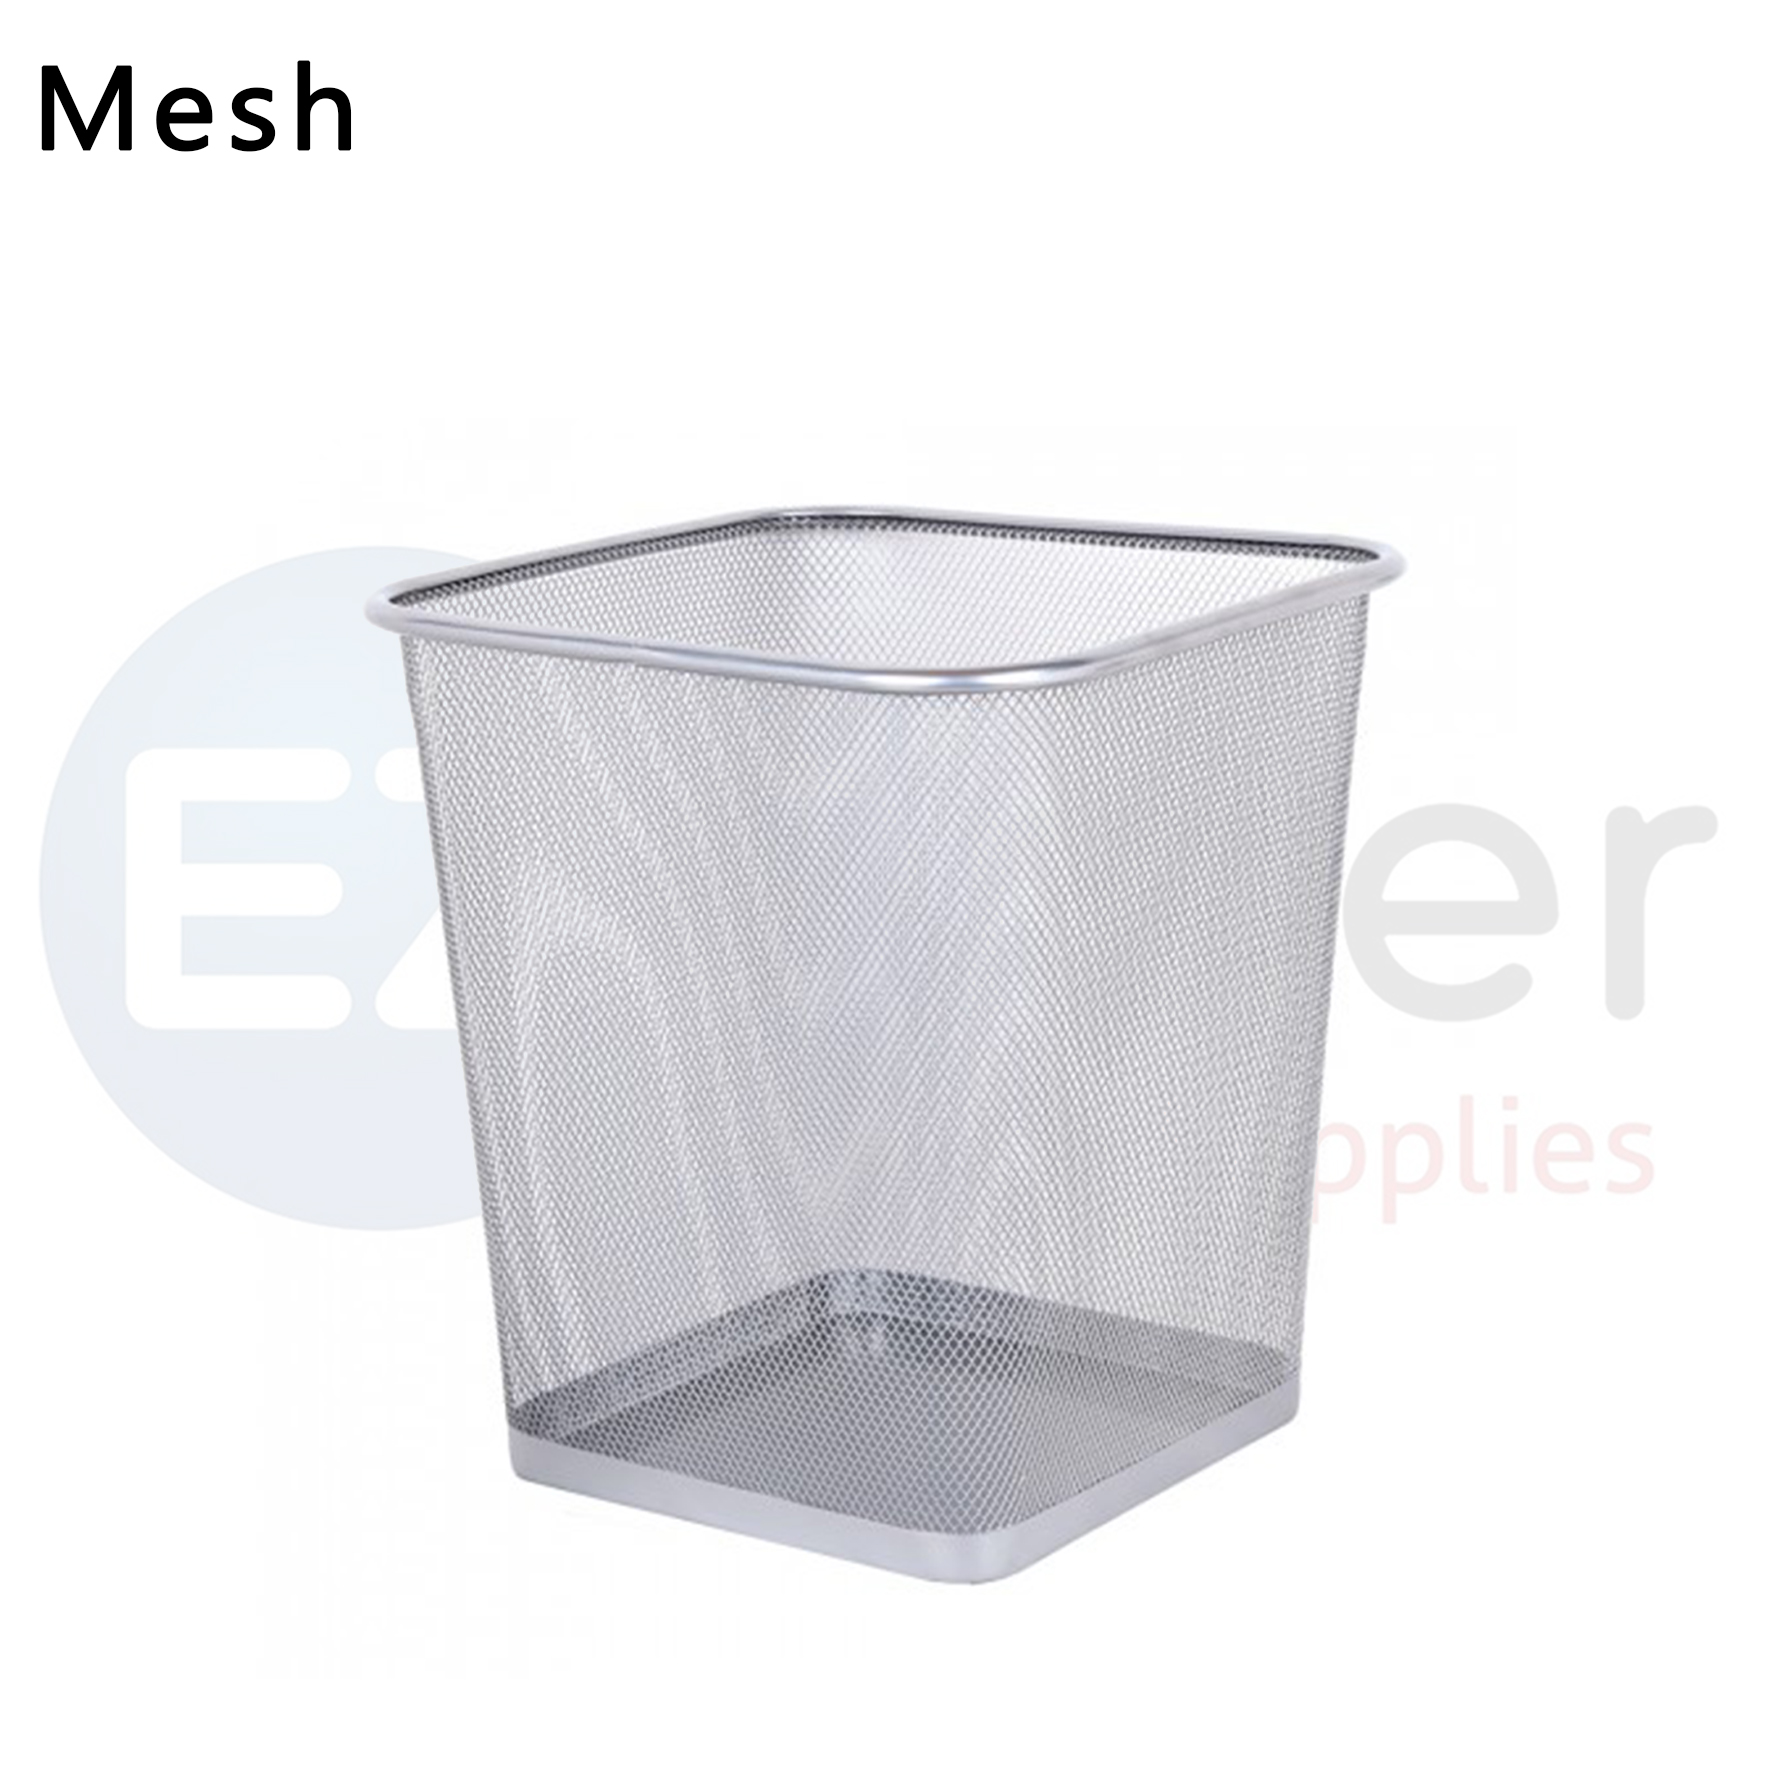 Mesh Waste basket square shape 220*220*300